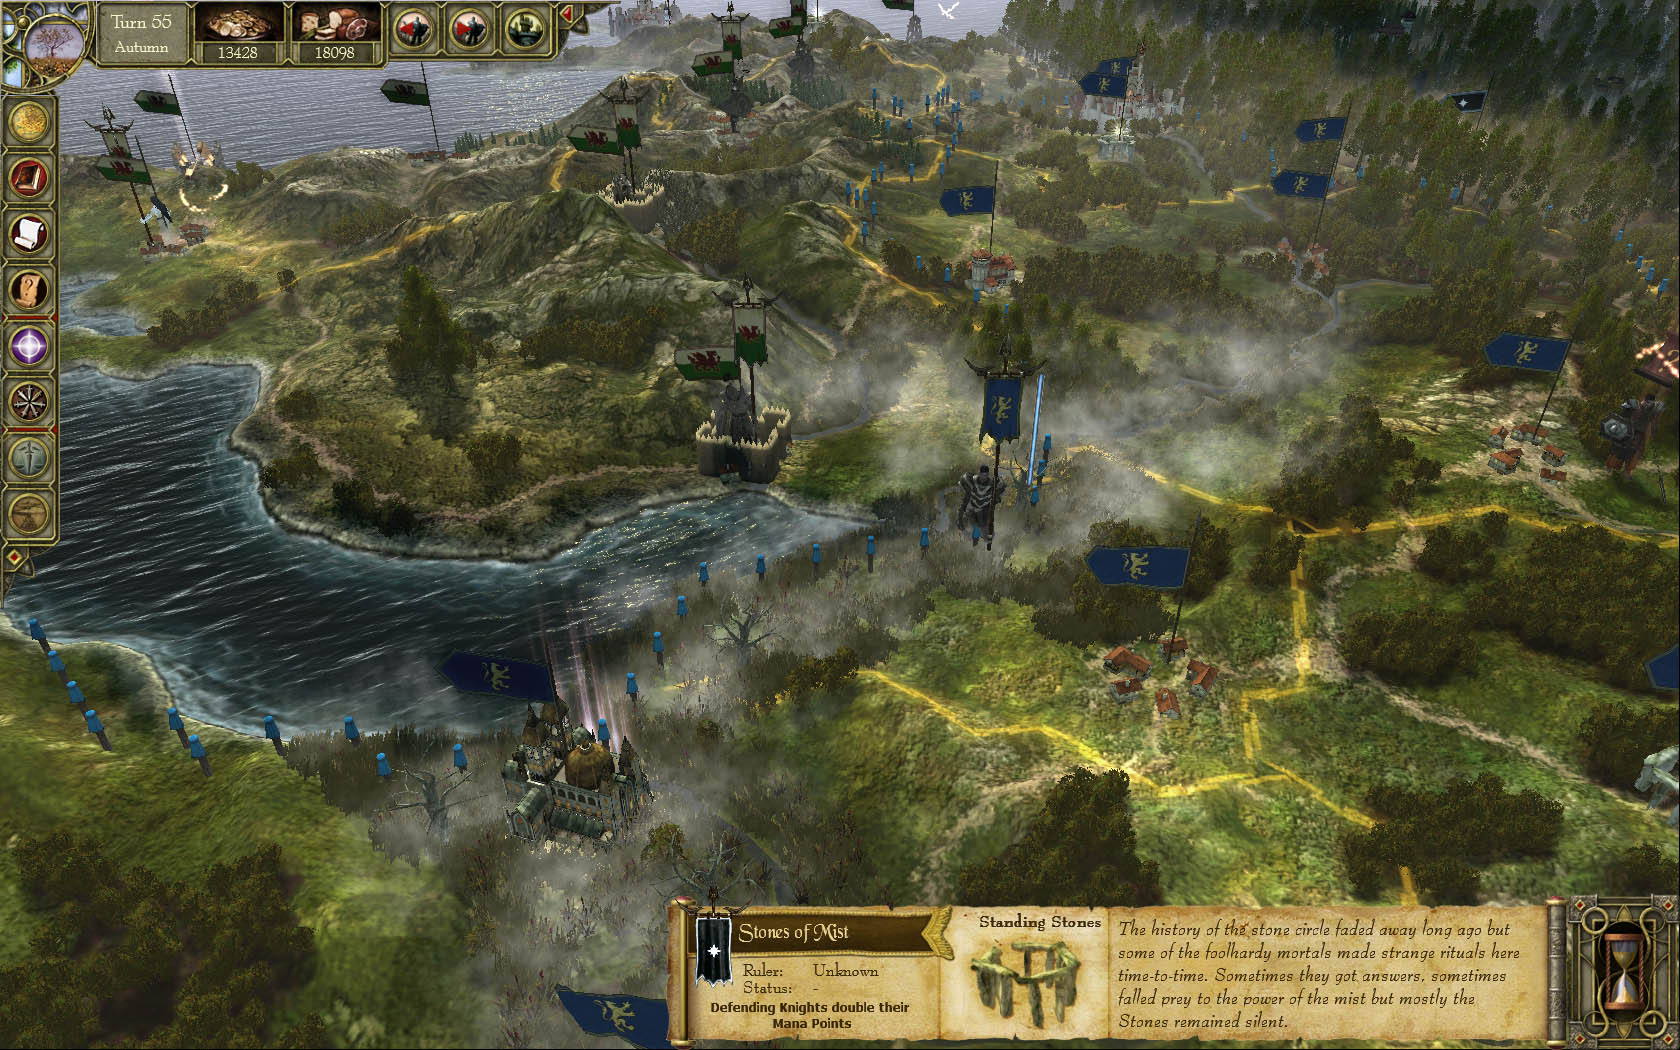 King Arthur: Legendary Artifacts DLC screenshot